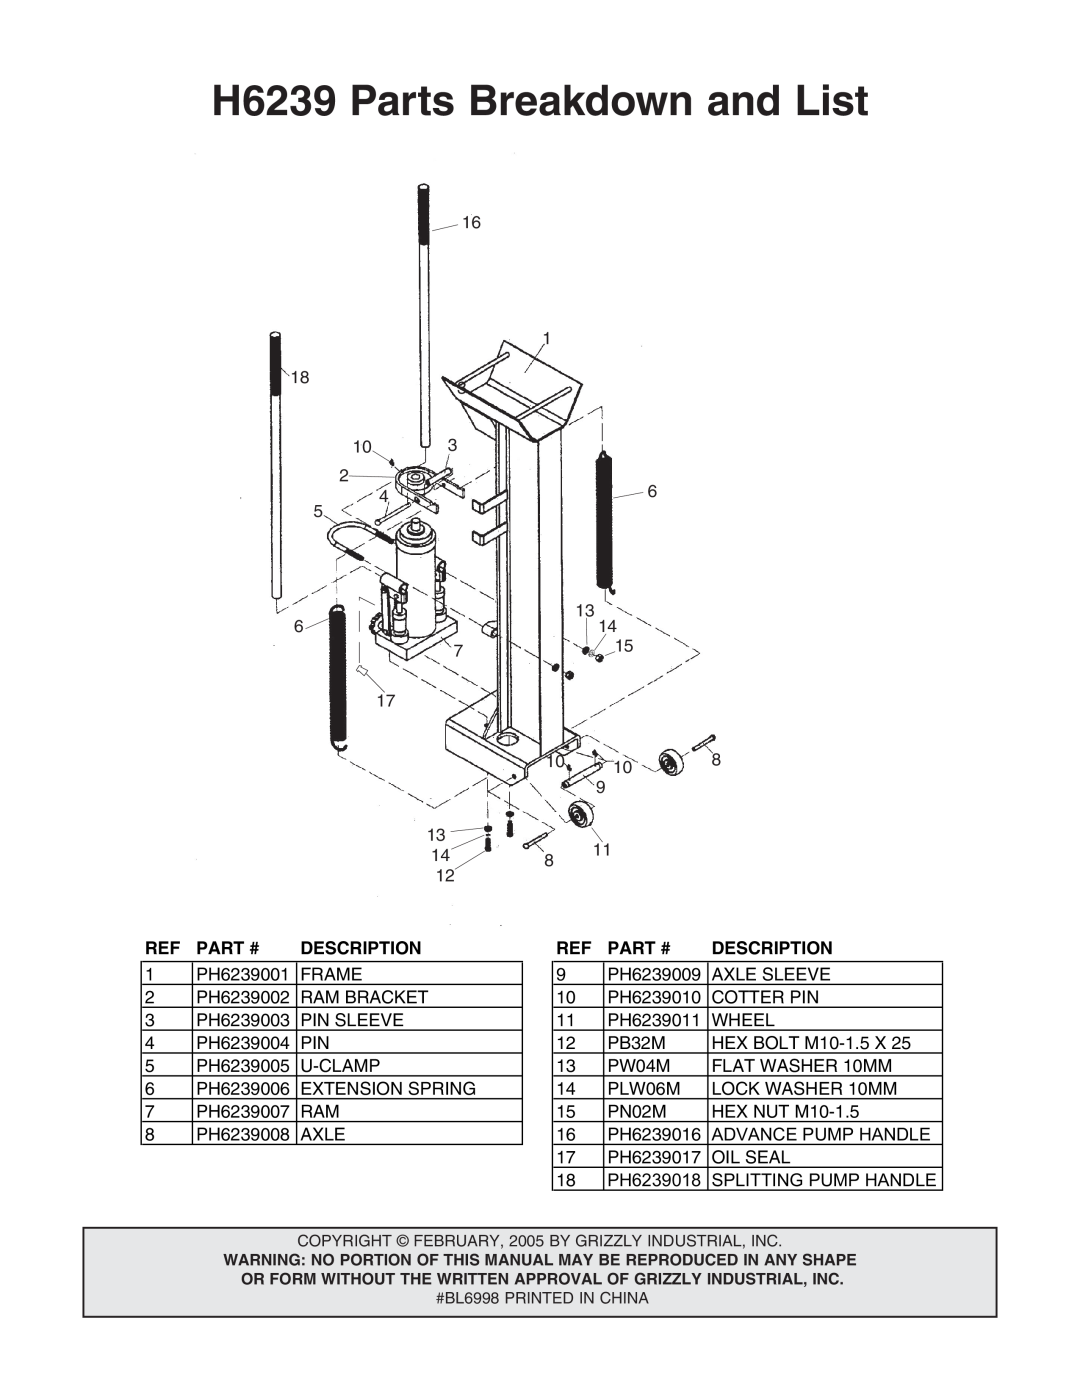 Grizzly instruction sheet H6239 Parts Breakdown and List, Ref Part #, Description 